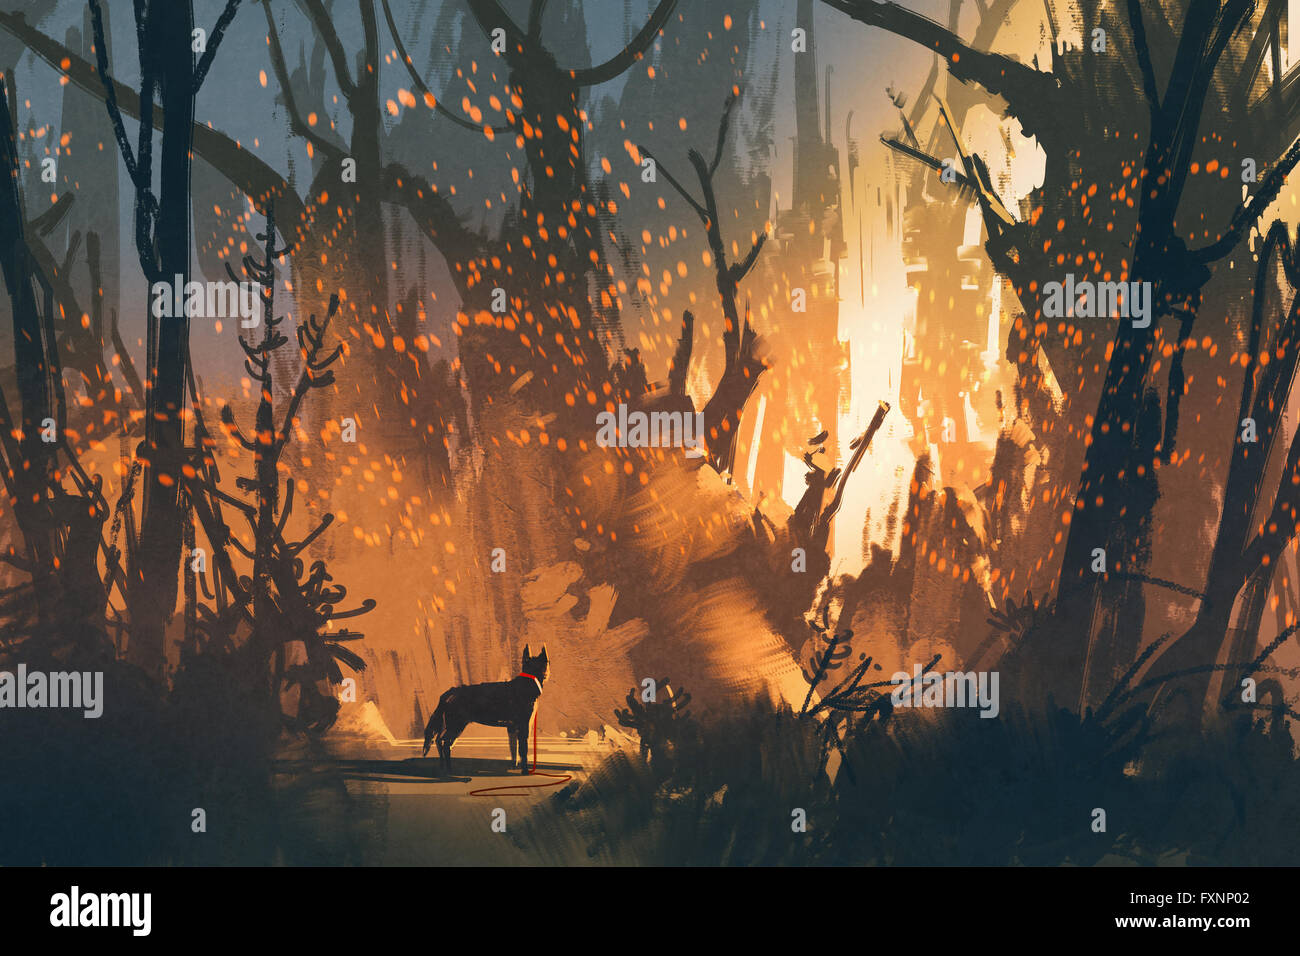 Lost Dog nella foresta con una luce mistica,l'illustrazione pittura Foto Stock